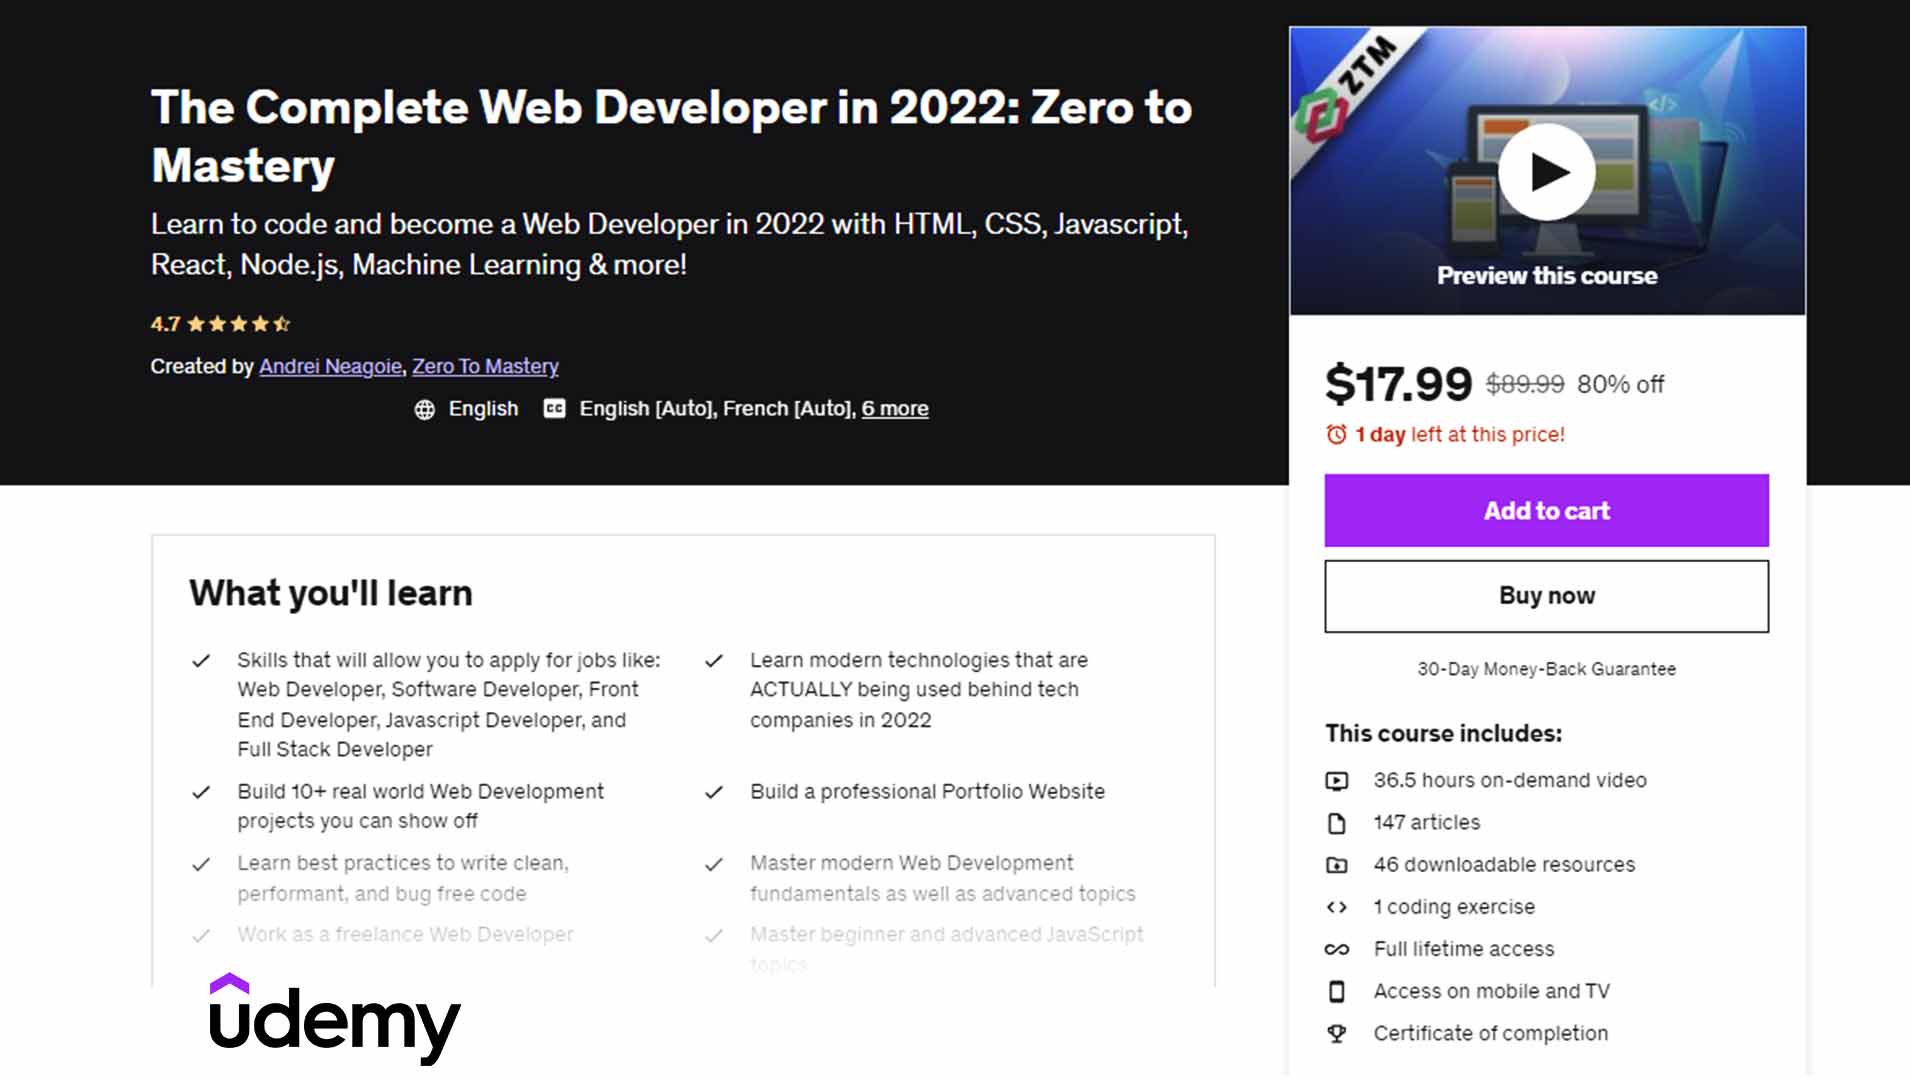 The Complete Web Developer in 2022: Zero to Mastery